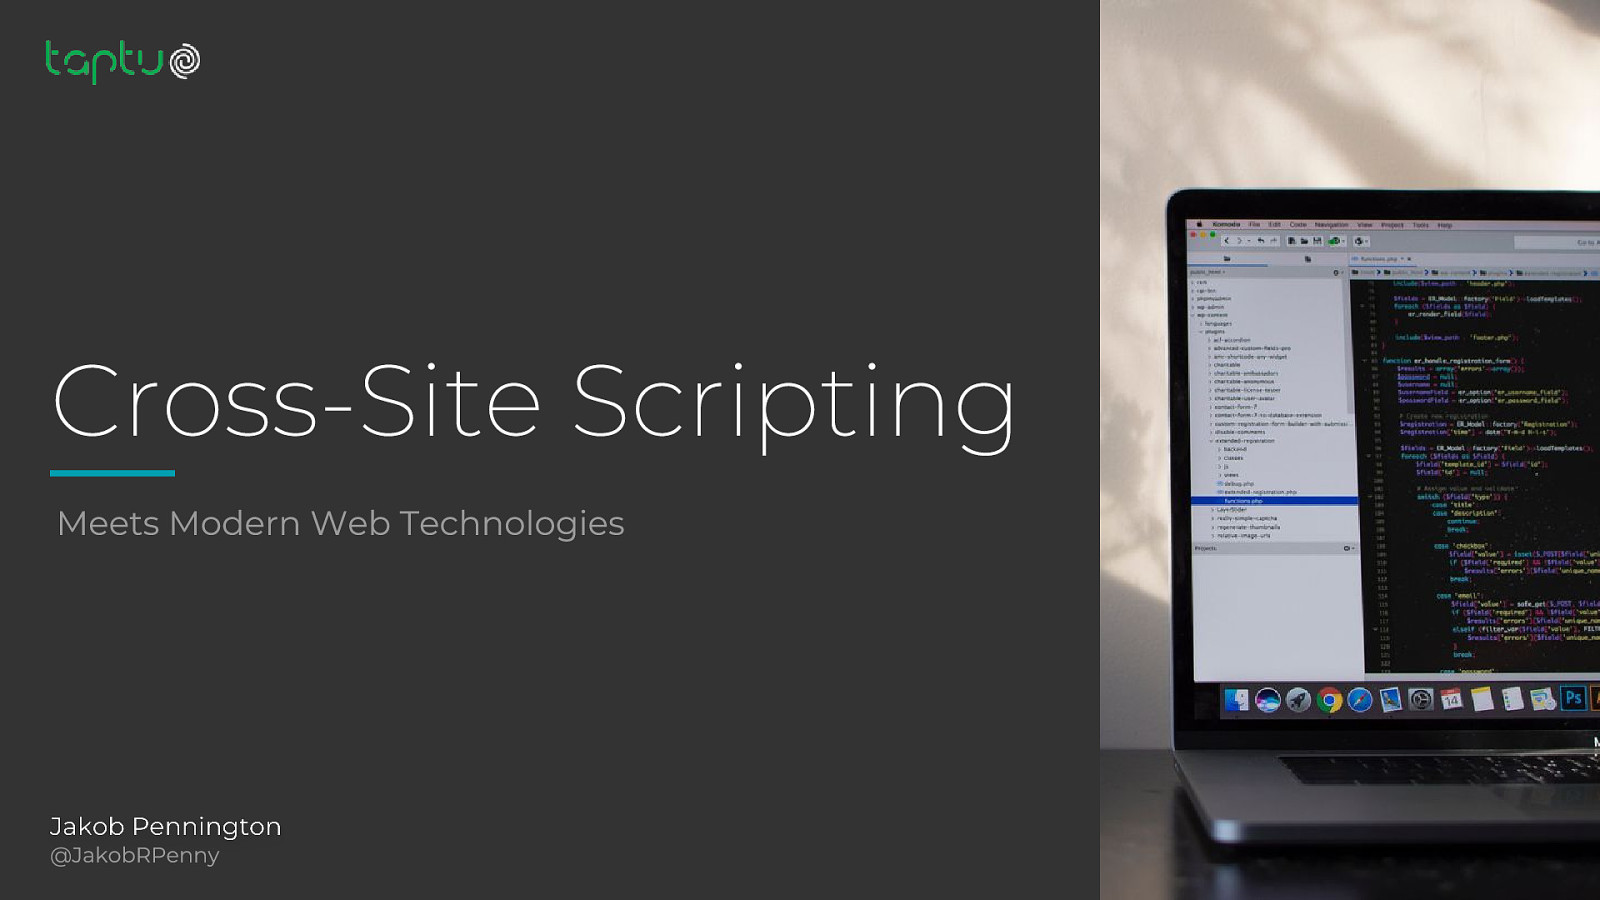 Cross-Site Scripting meets Modern Web Technology